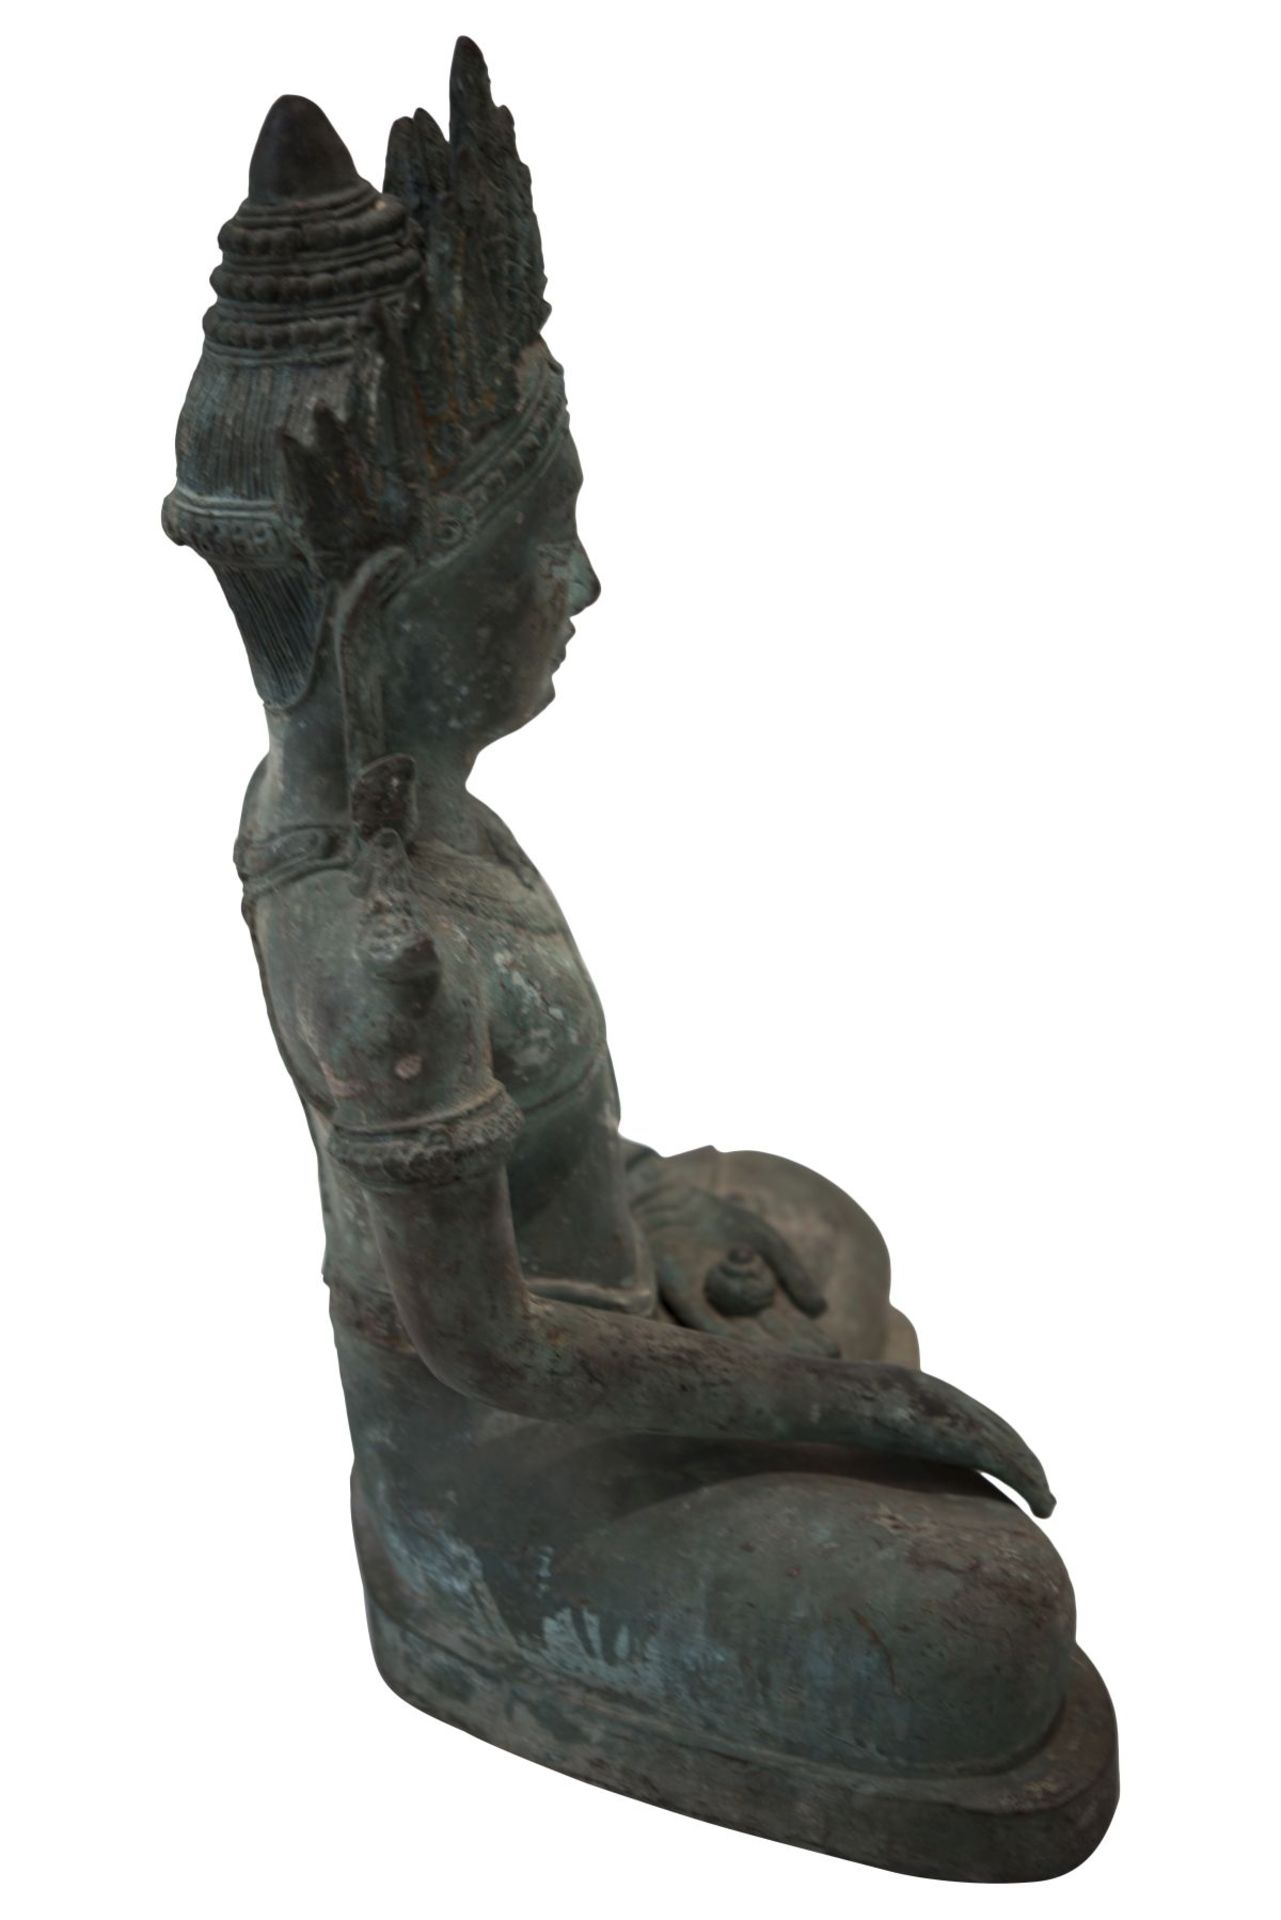 Bronze Buddha Bronze, grüne Patina, im Meditationssitz, die rechte Hand in der Geste der - Bild 2 aus 8